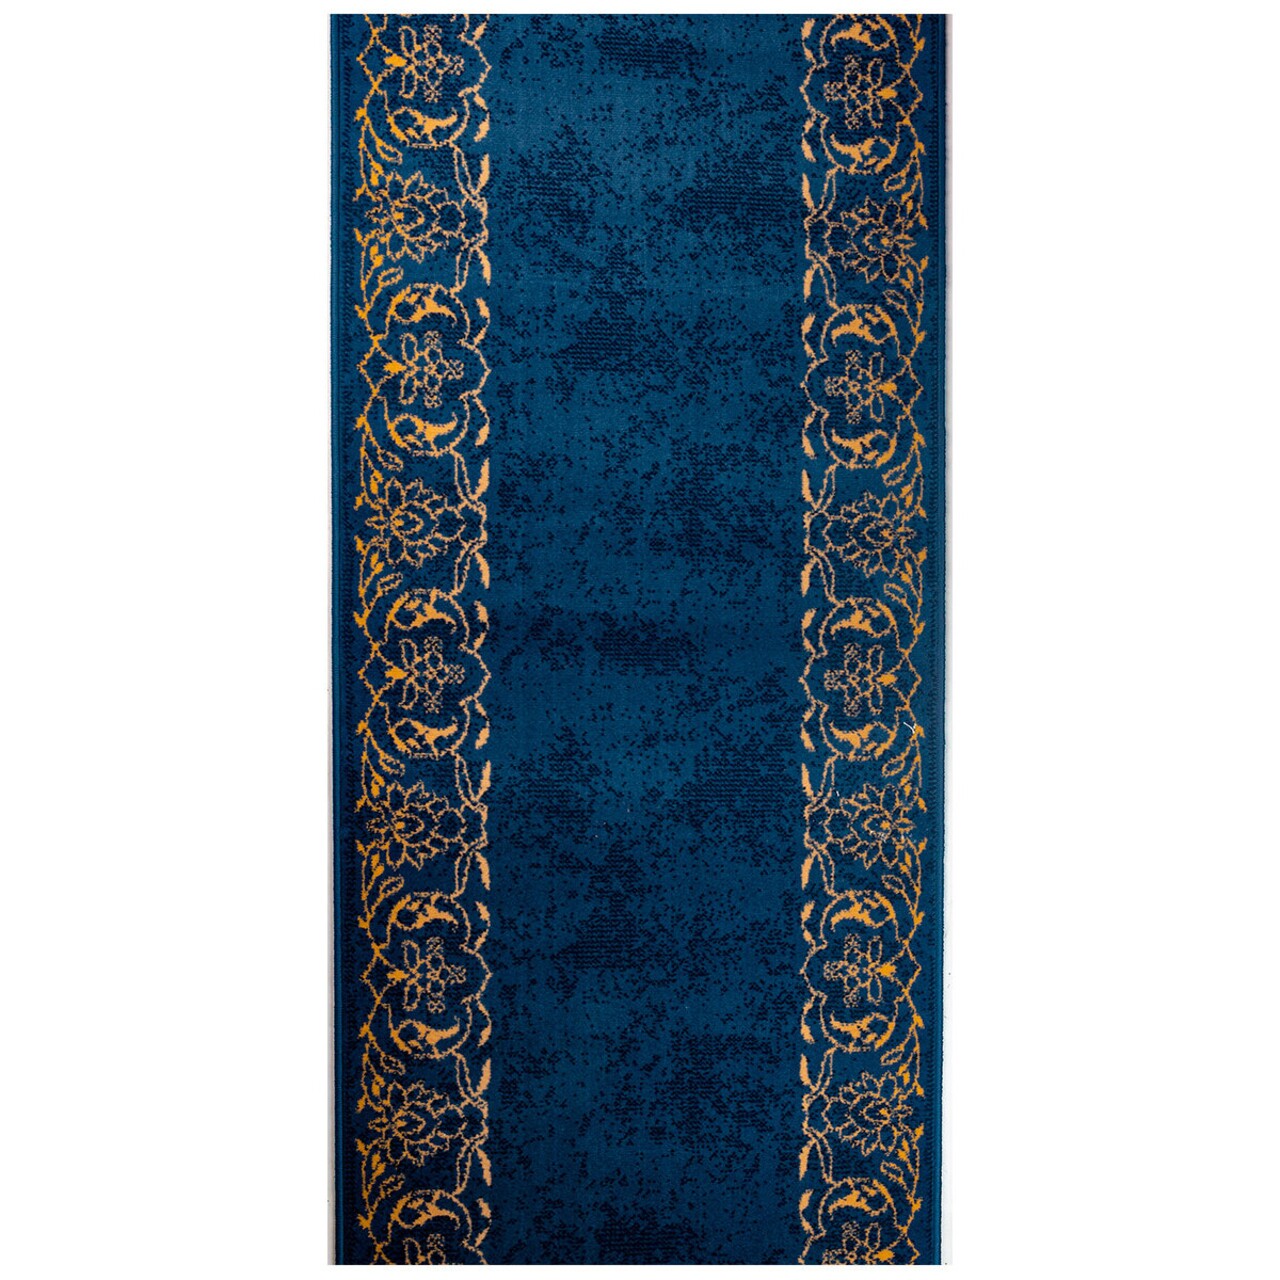 Masali futó szőnyeg, Decorino, 80x150 cm, polipropilén, kék